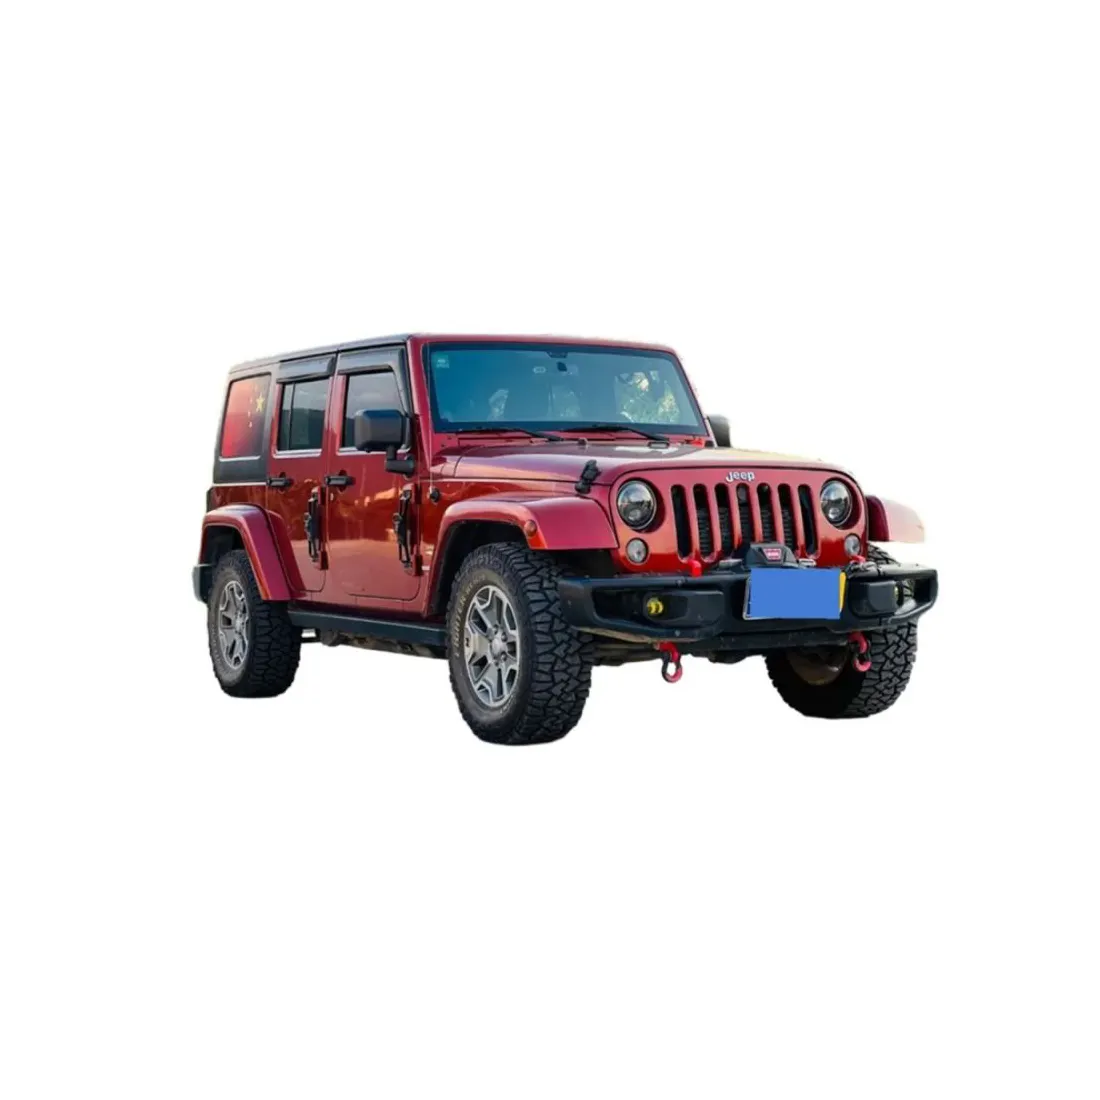 In magazzino 5 giorni di consegna miglior prezzo 2014 jeep 2.8TD Sahara wrangler robicon veicoli suv auto usate auto di seconda mano